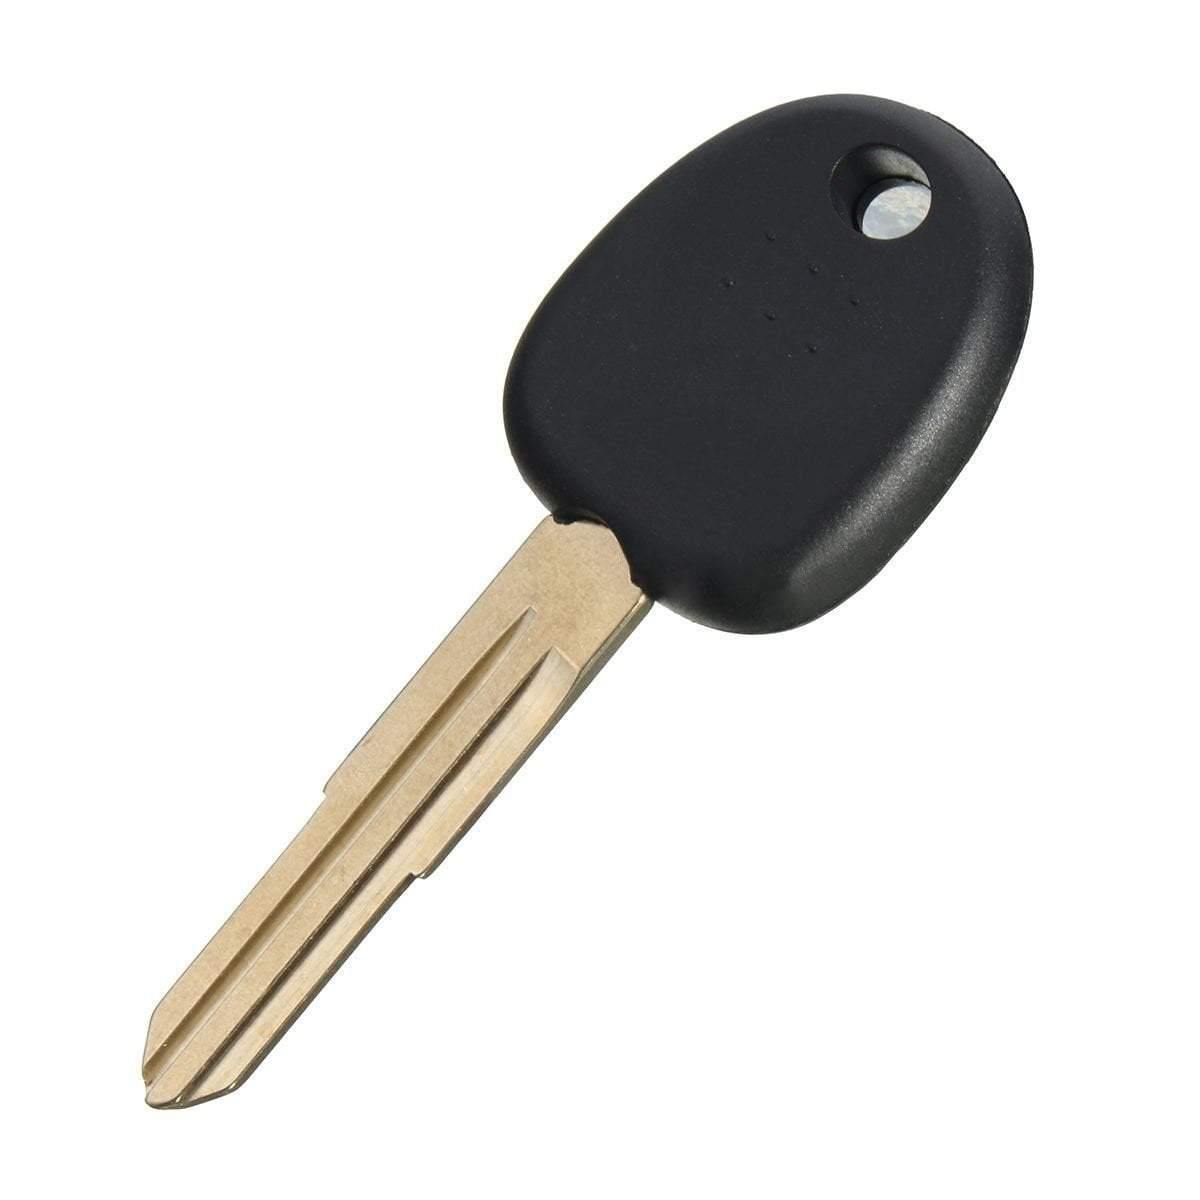 Fekete színű Kia kulcs, kulcsház.